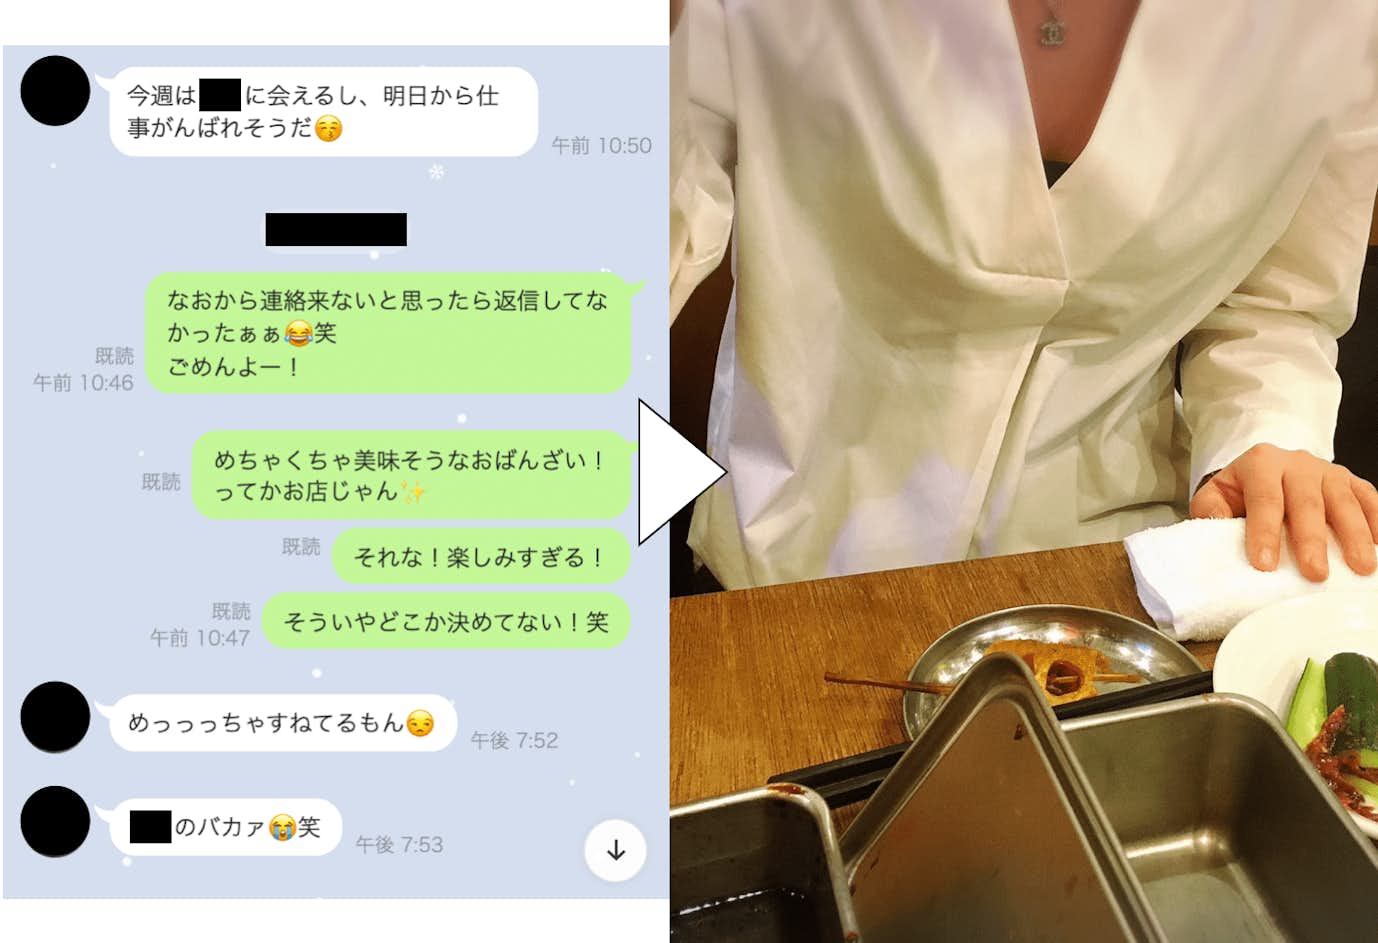 ハッピーメールを使って熊本で実際に出会った女性の写真とLINEスクショ